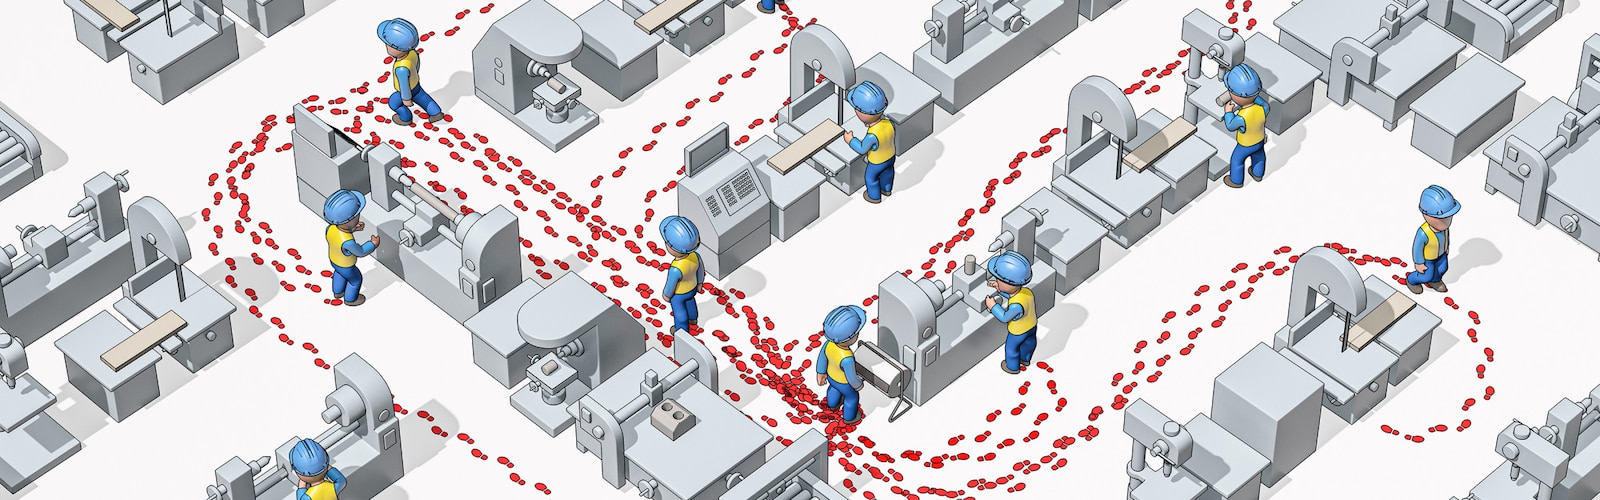 Εικονογραφημένη εικόνα εργαζομένων βιομηχανίας με κράνη ασφαλείας που απεικονίζονται από ψηλά σε βιομηχανικό περιβάλλον, με τα ίχνη τους ορατά για την απεικόνιση των κινήσεών τους.